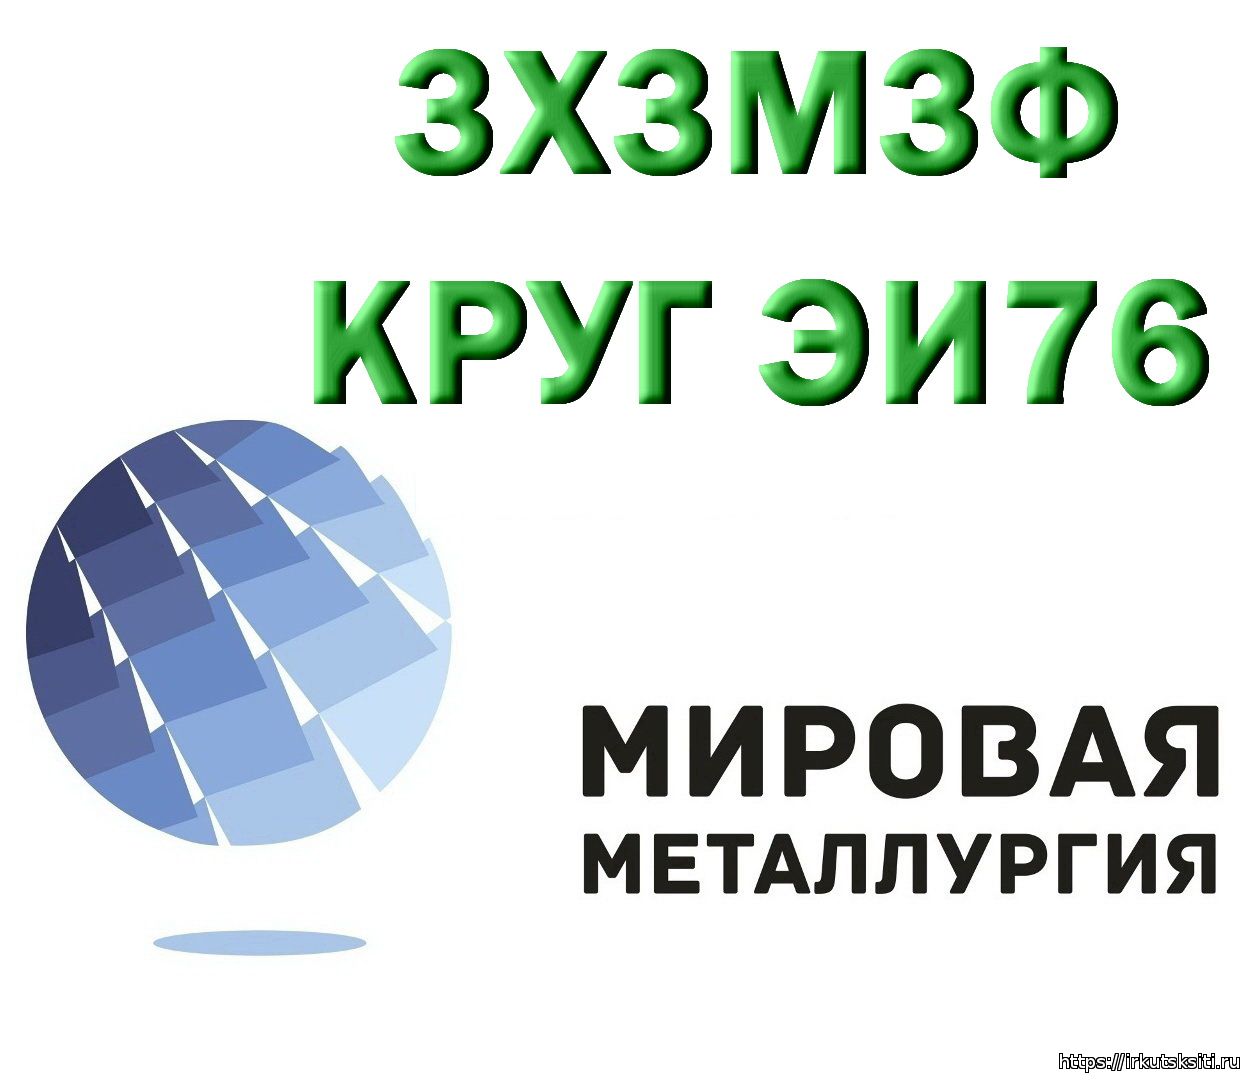 Компания ООО «Мировая Металлургия» предлагает вам купить сталь 3Х3М3Ф на выгодных условиях...